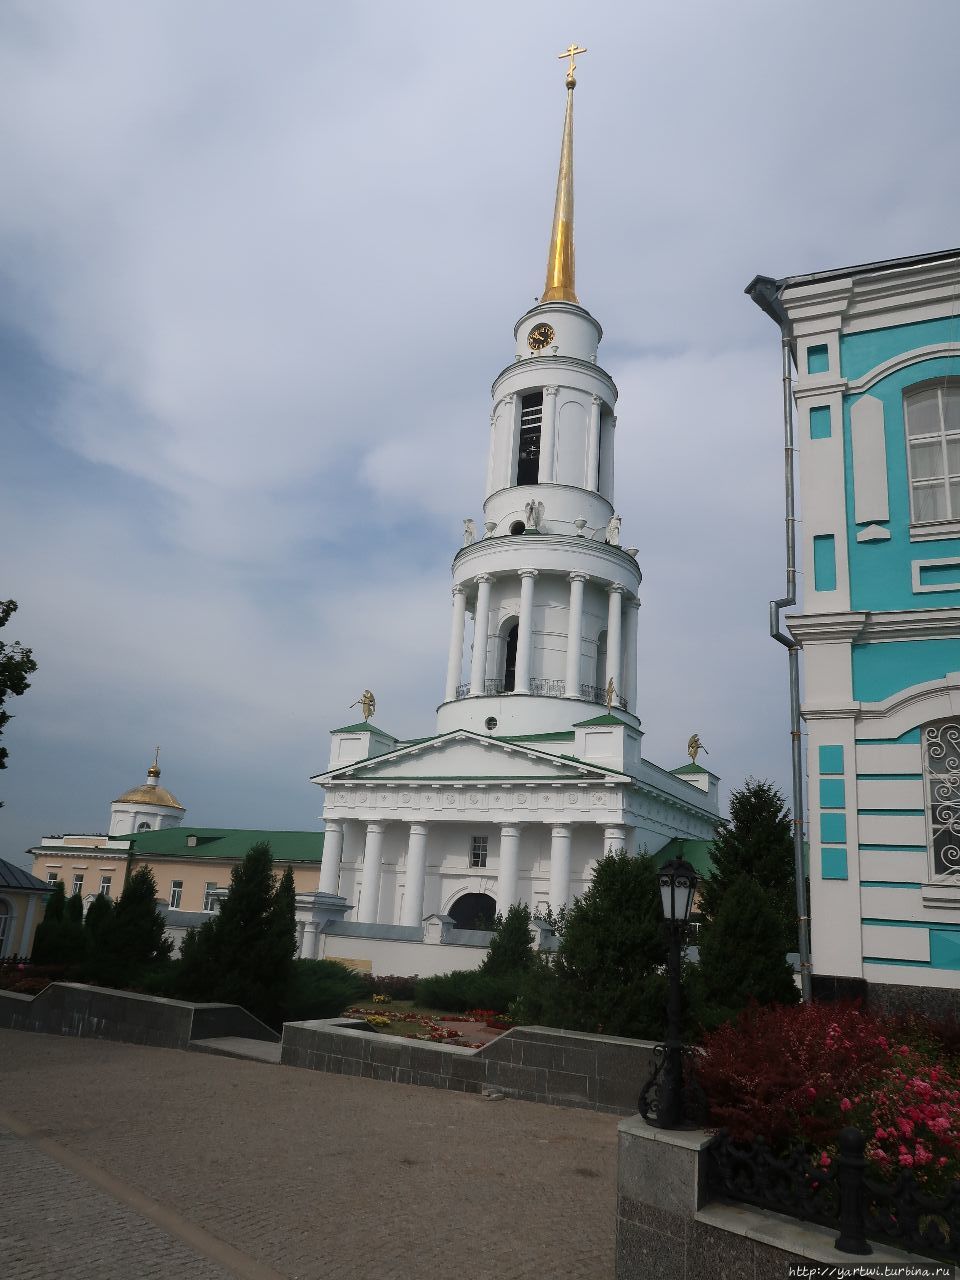 Надвратная колокольня на территории Задонского Рождество-Богородицкого монастыря. Задонск, Россия